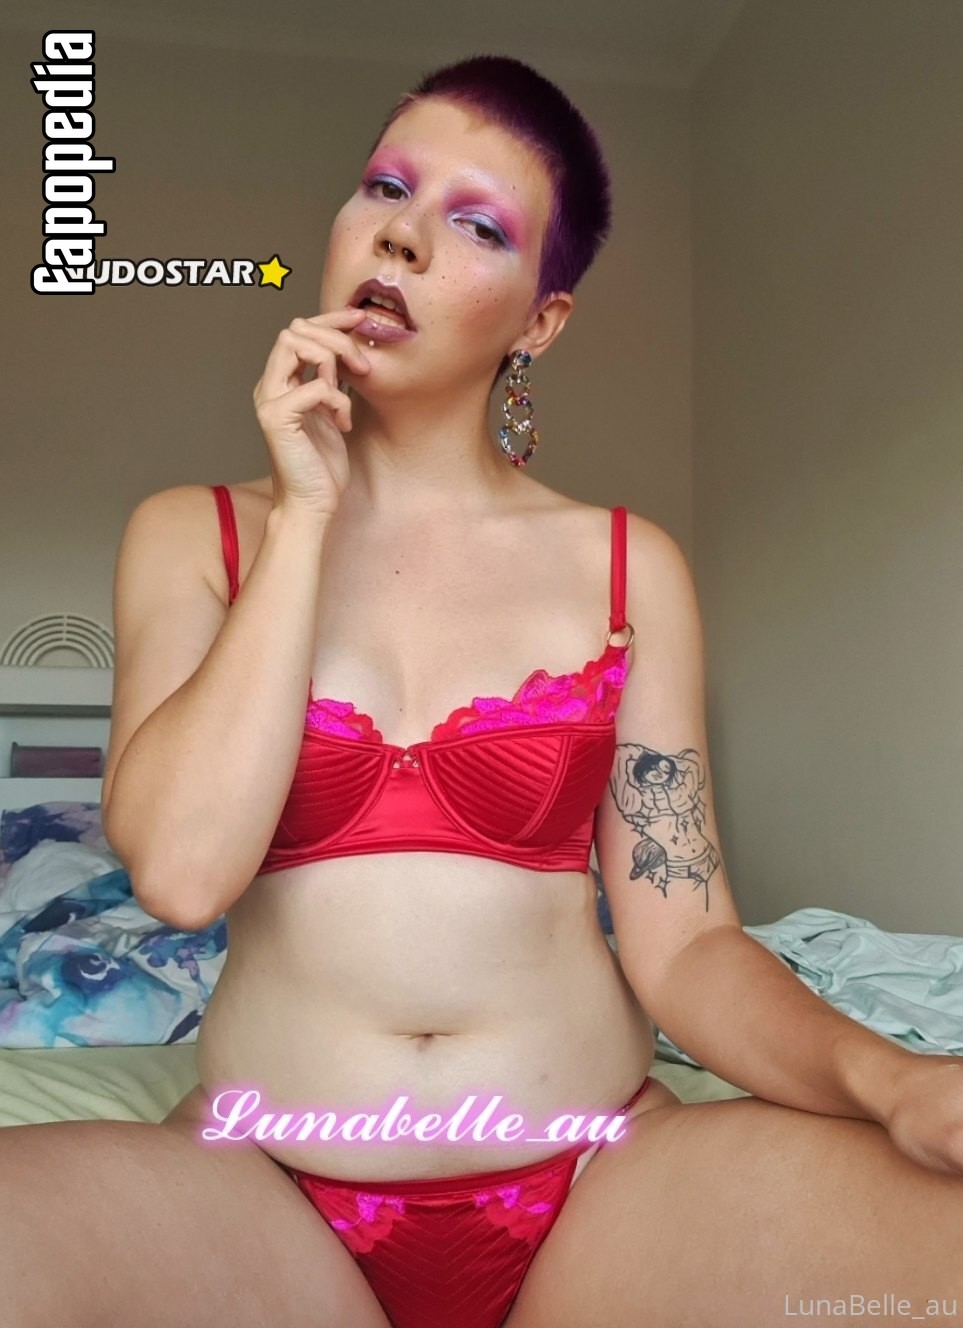 Lunabelle_au Nude OnlyFans Leaks